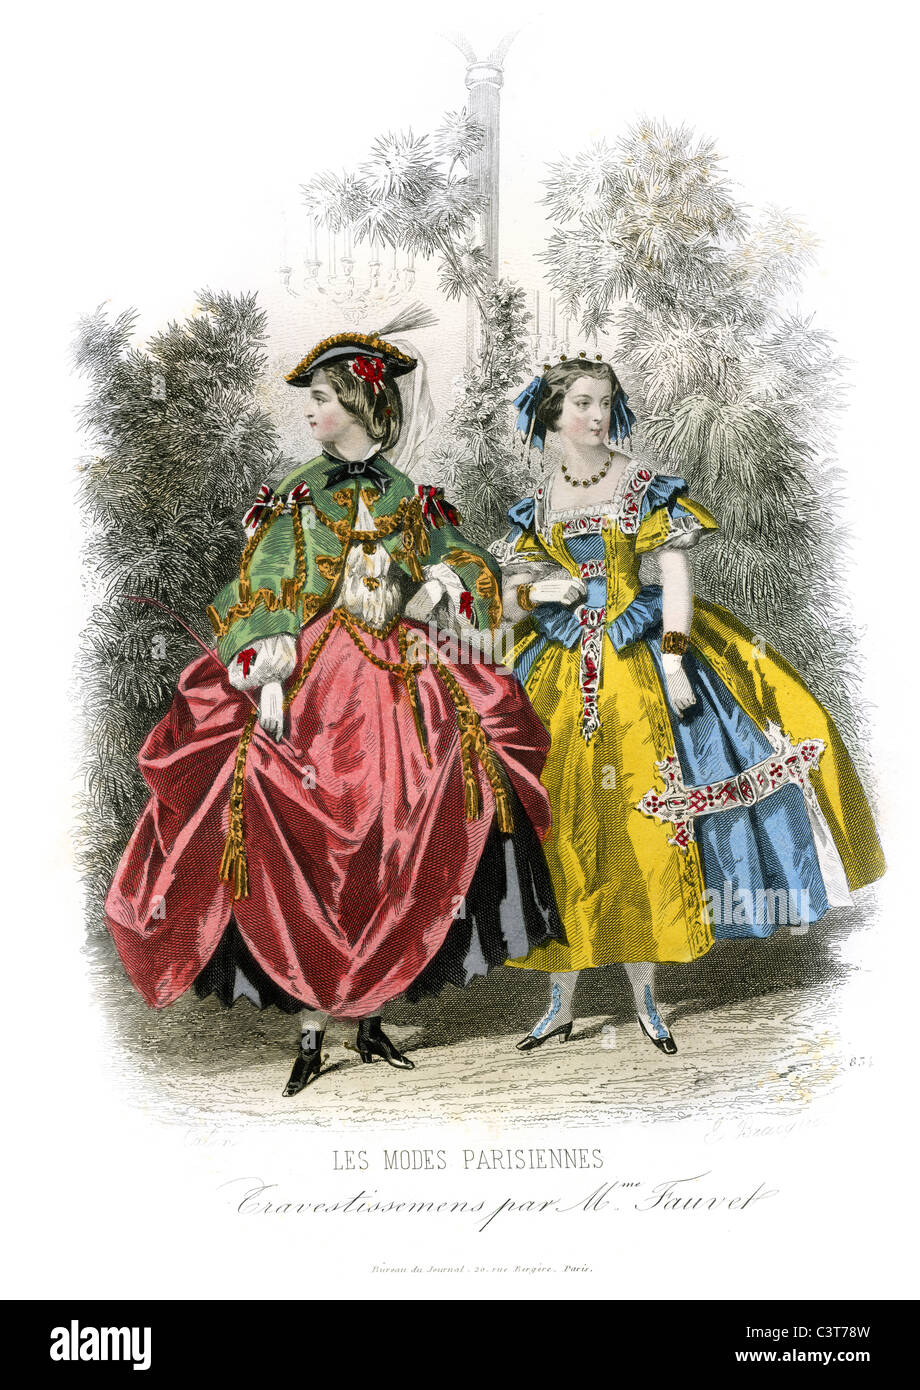 Deux jeunes femmes portant des tenues à la mode de Paris, France vers 1860 Banque D'Images